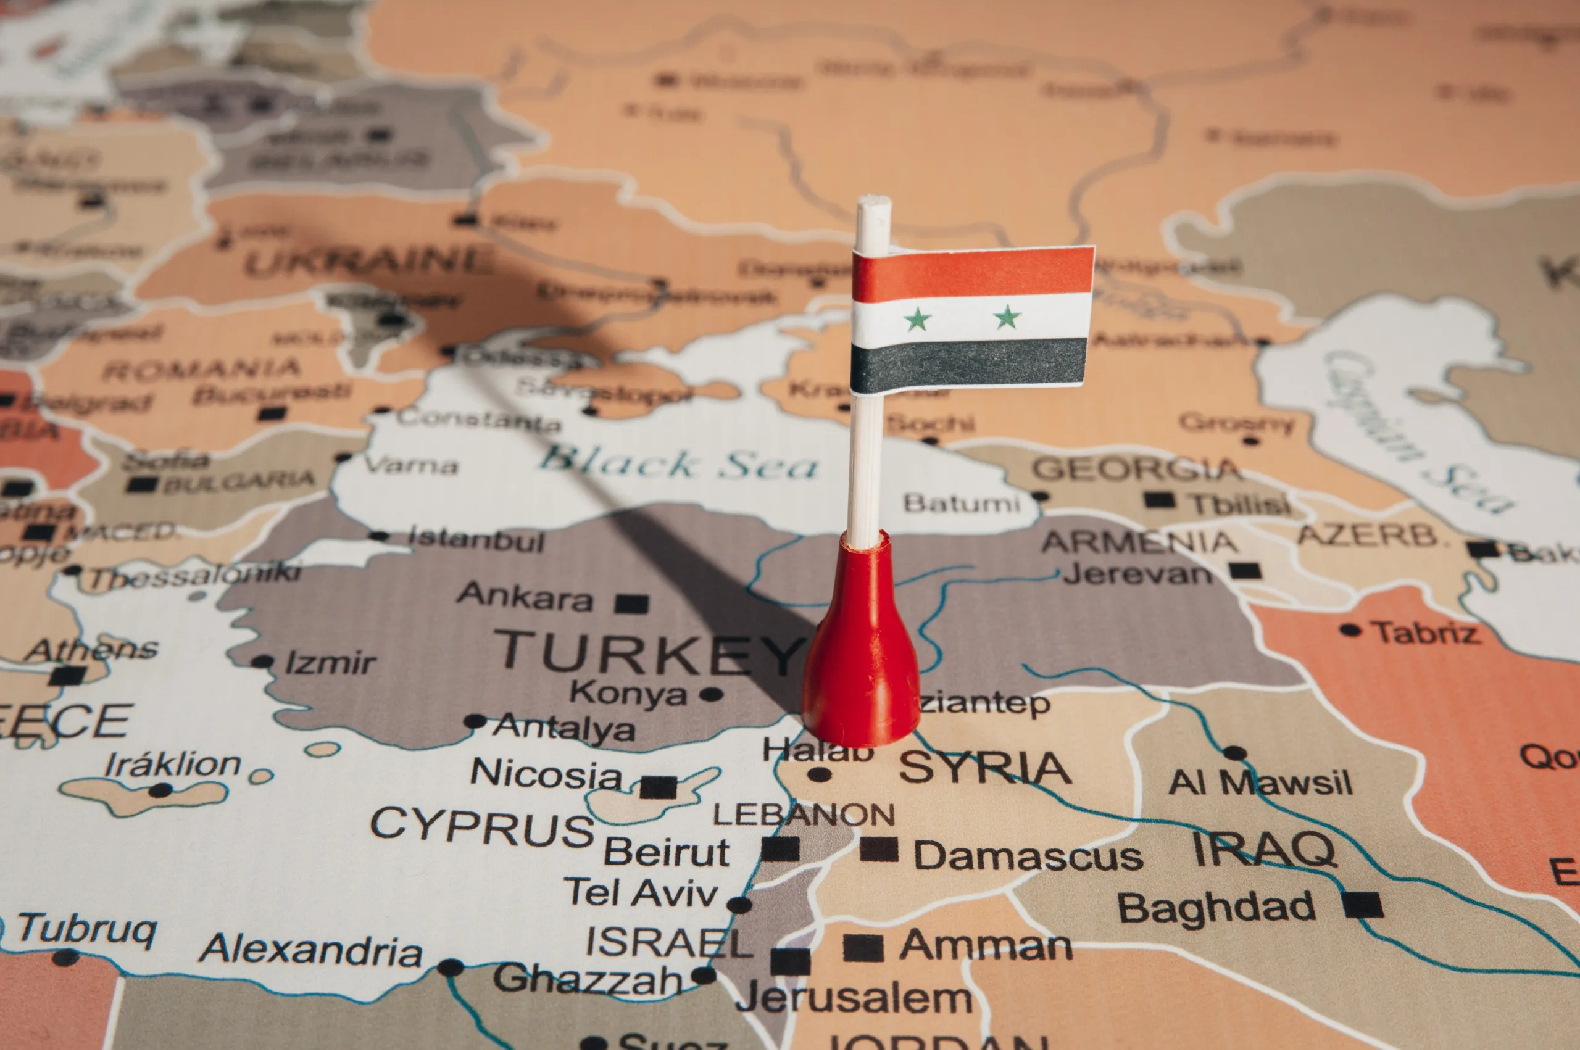 تنبع أهمية سوريا الجيوسياسية في خريطة الشرق الأوسط، من كونها تملك نفوذًا هائلًا في لبنان وتتمتع بعلاقات قوية مع إيران وروسيا